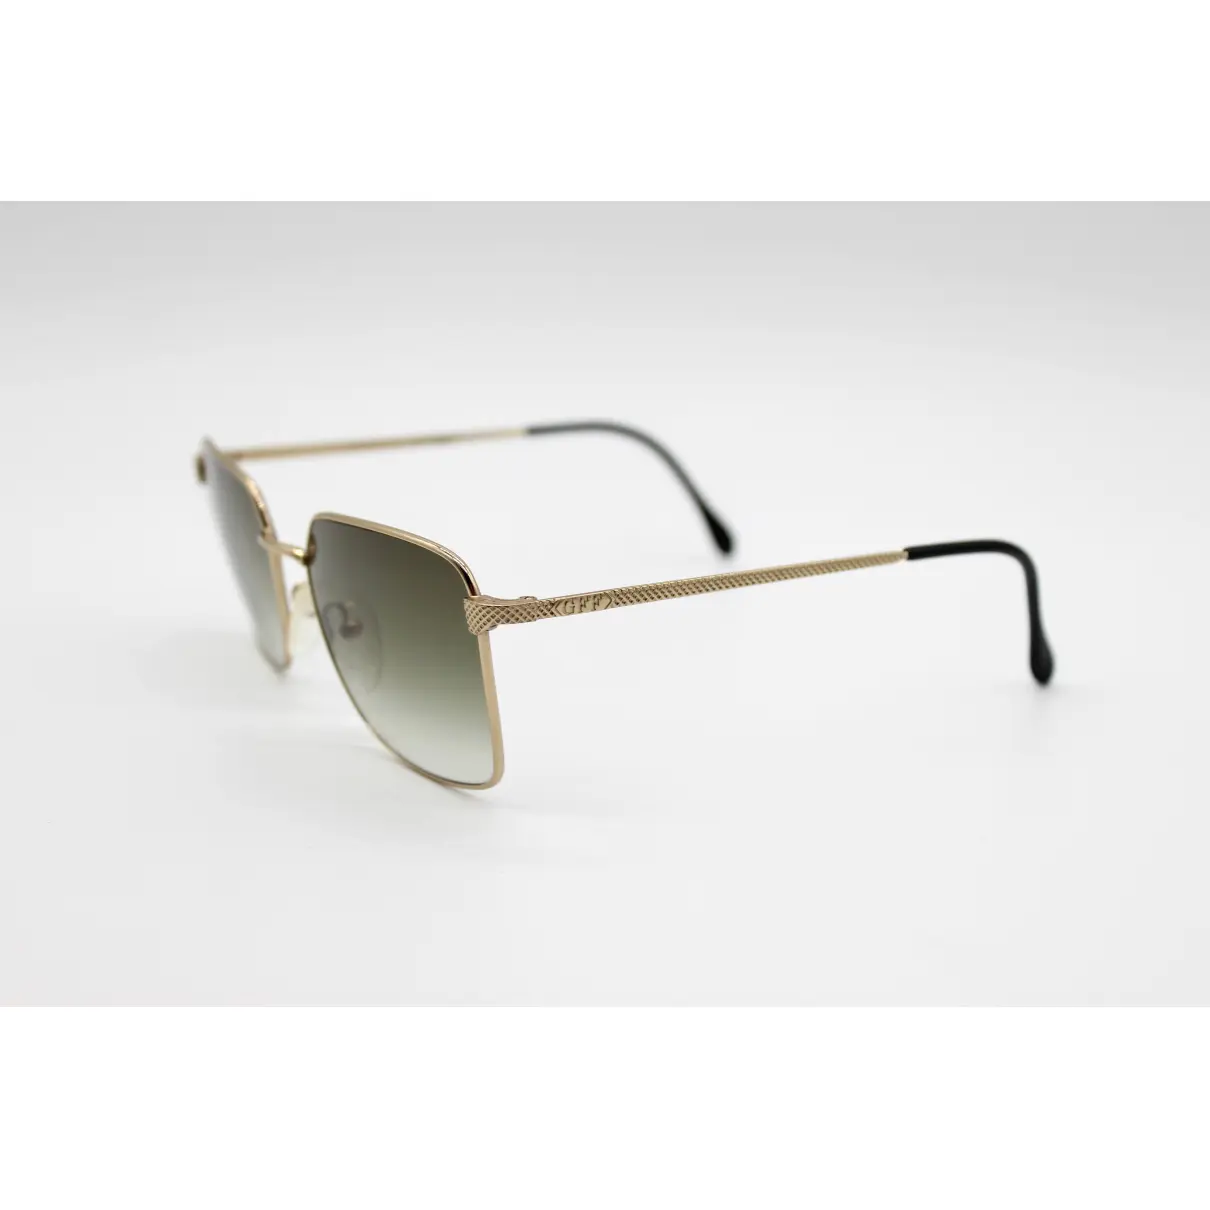 Sunglasses Gianfranco Ferré - Vintage